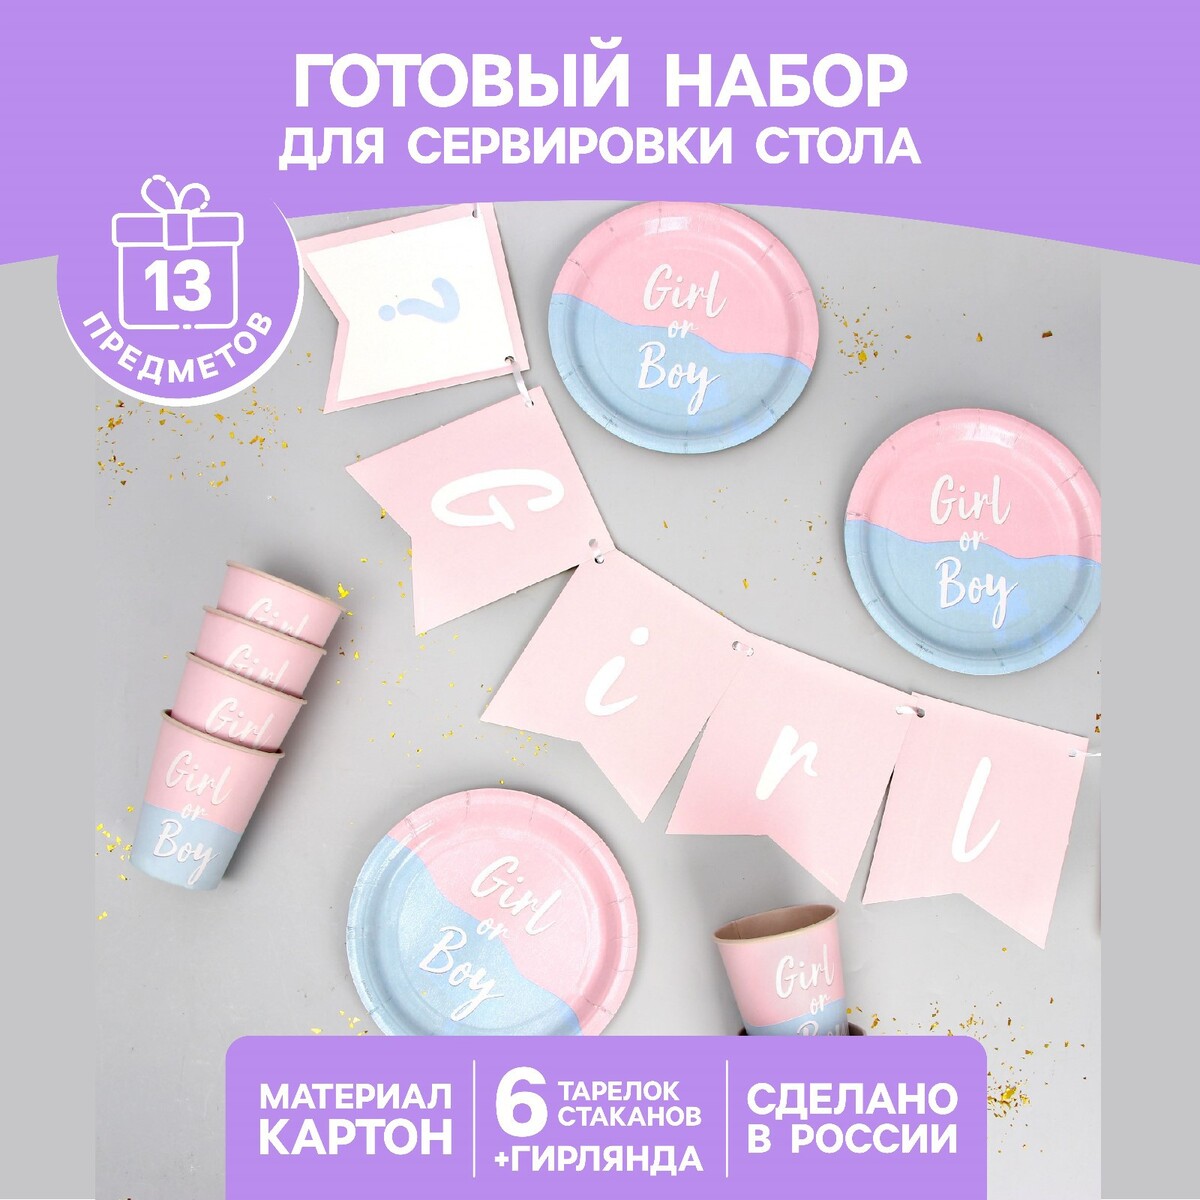 Набор бумажной посуды набор для проведения гендерной вечеринки девочка или мальчик 250 гр кв м